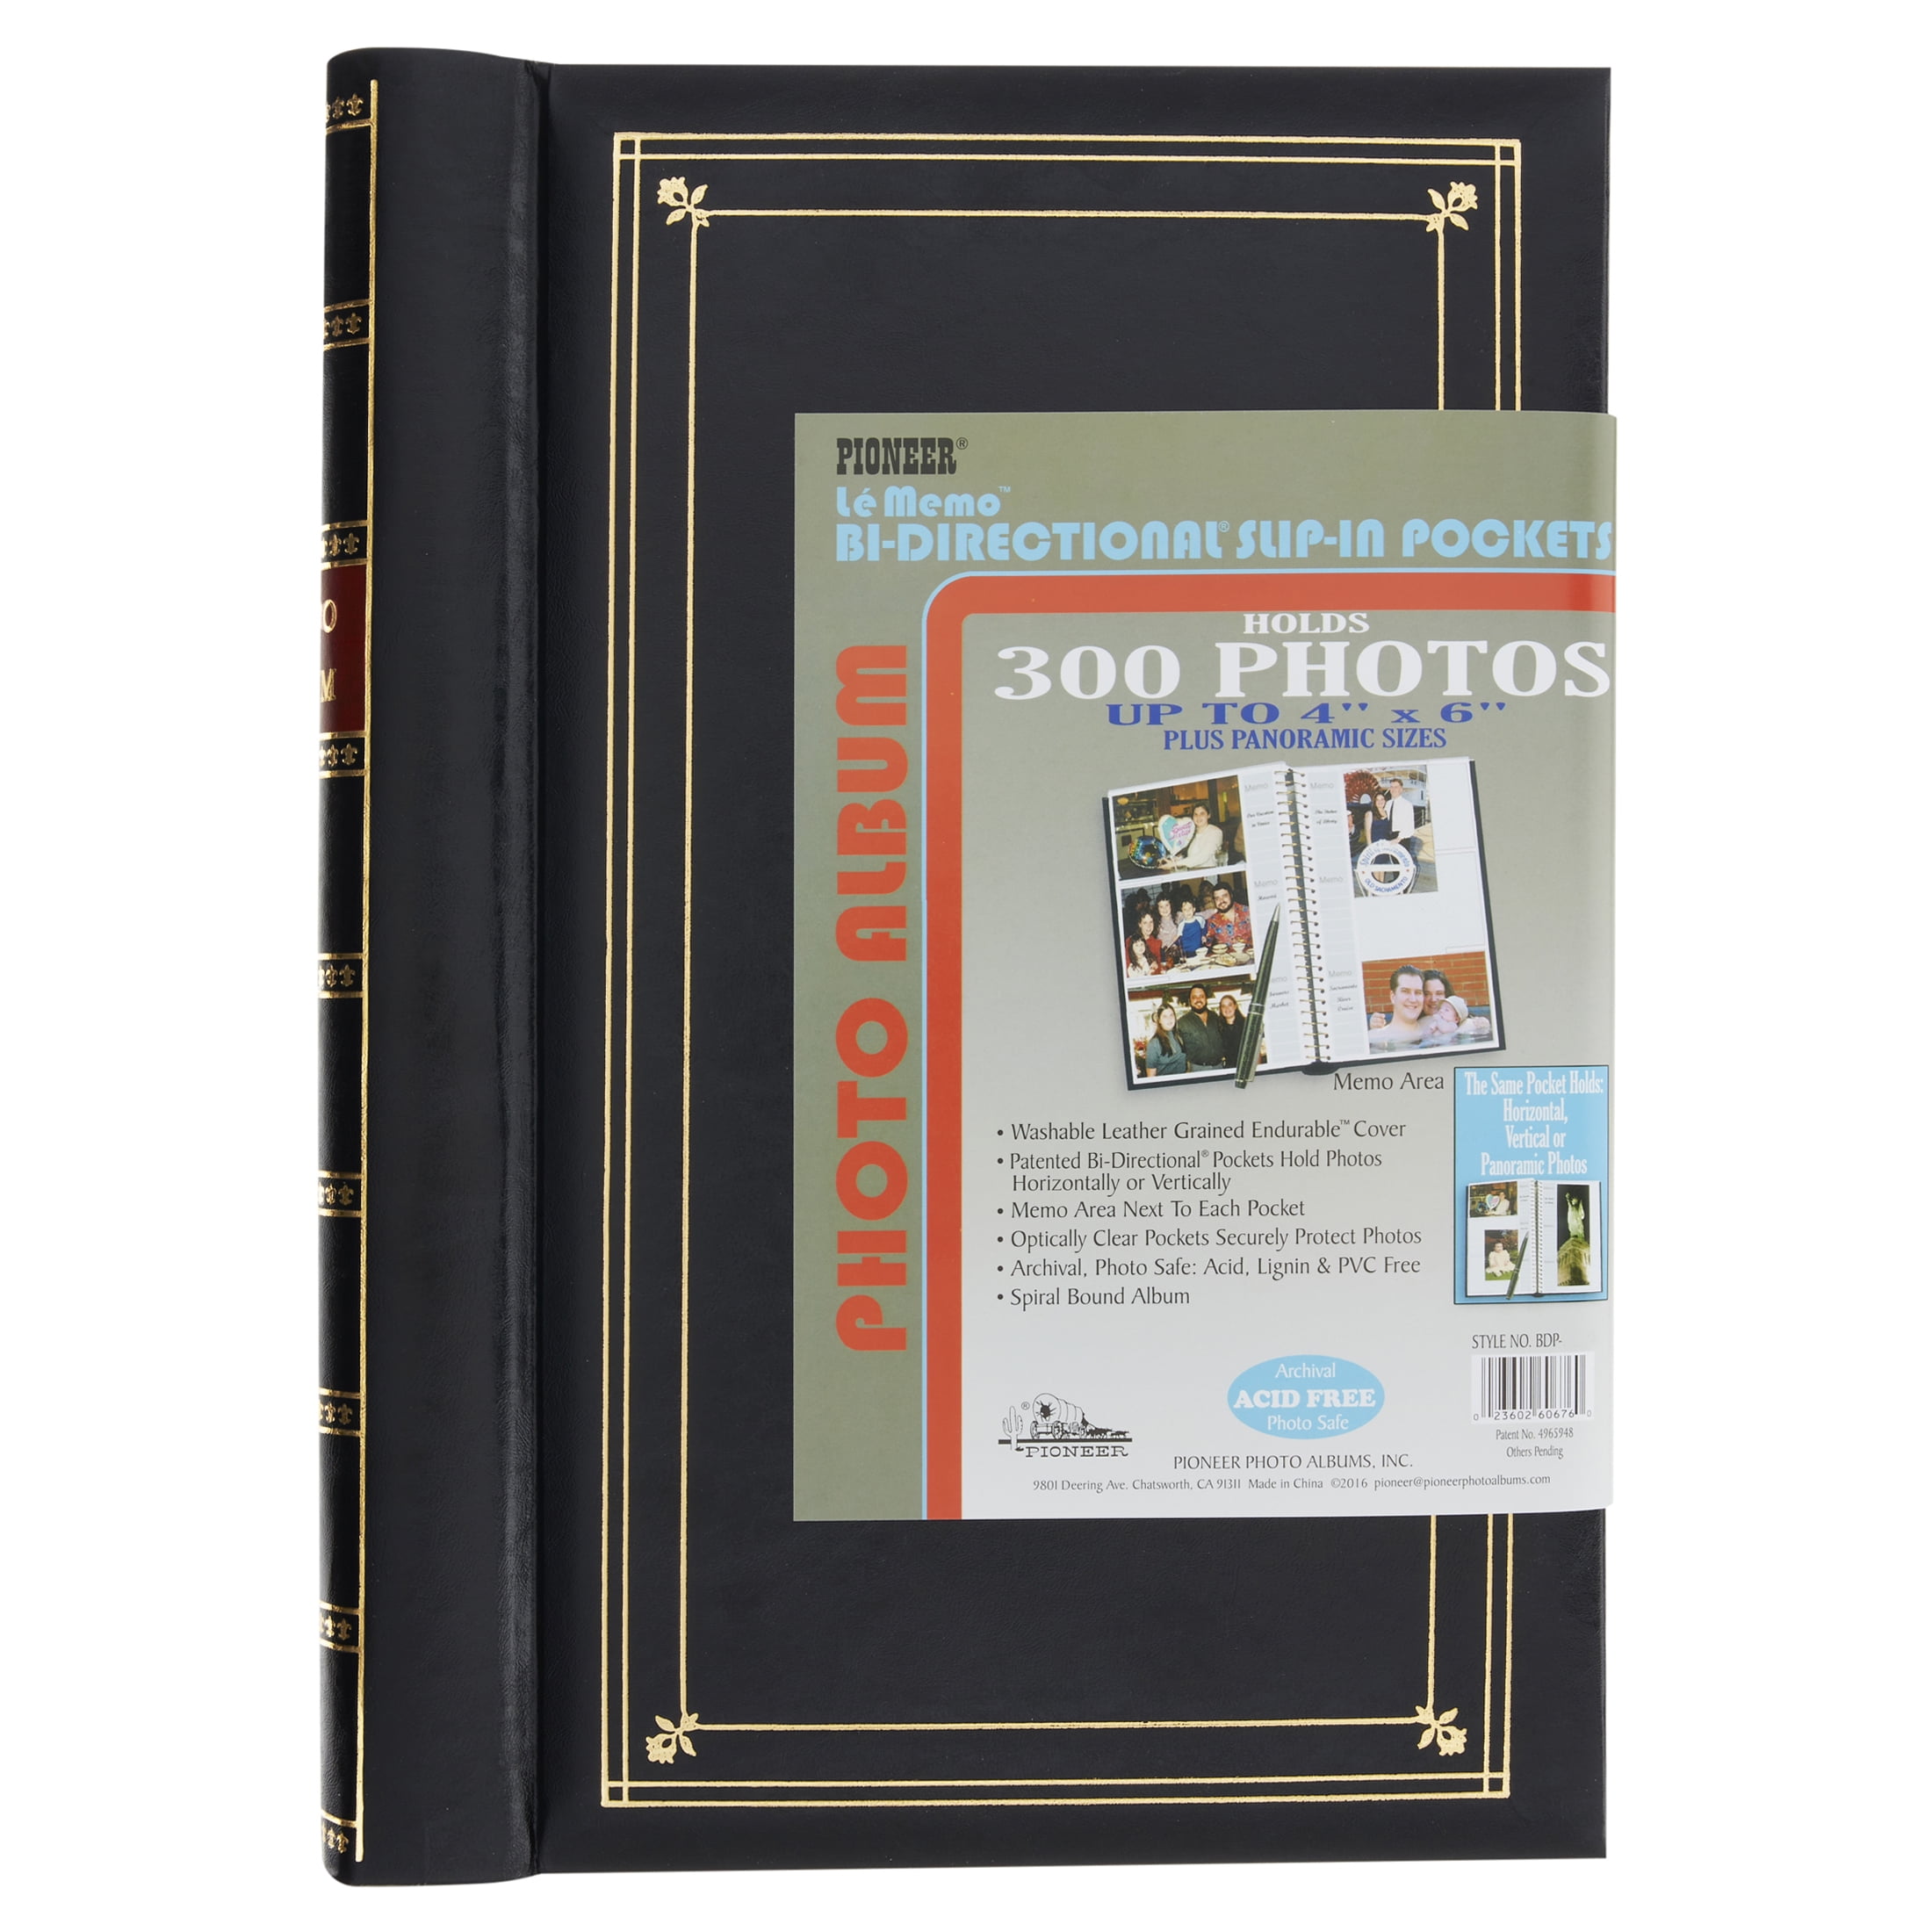 Álbum de fotos con encuadernación en espiral. 300 bolsillos bidireccionales  para fotos de 4 x 6 pulg., color azul